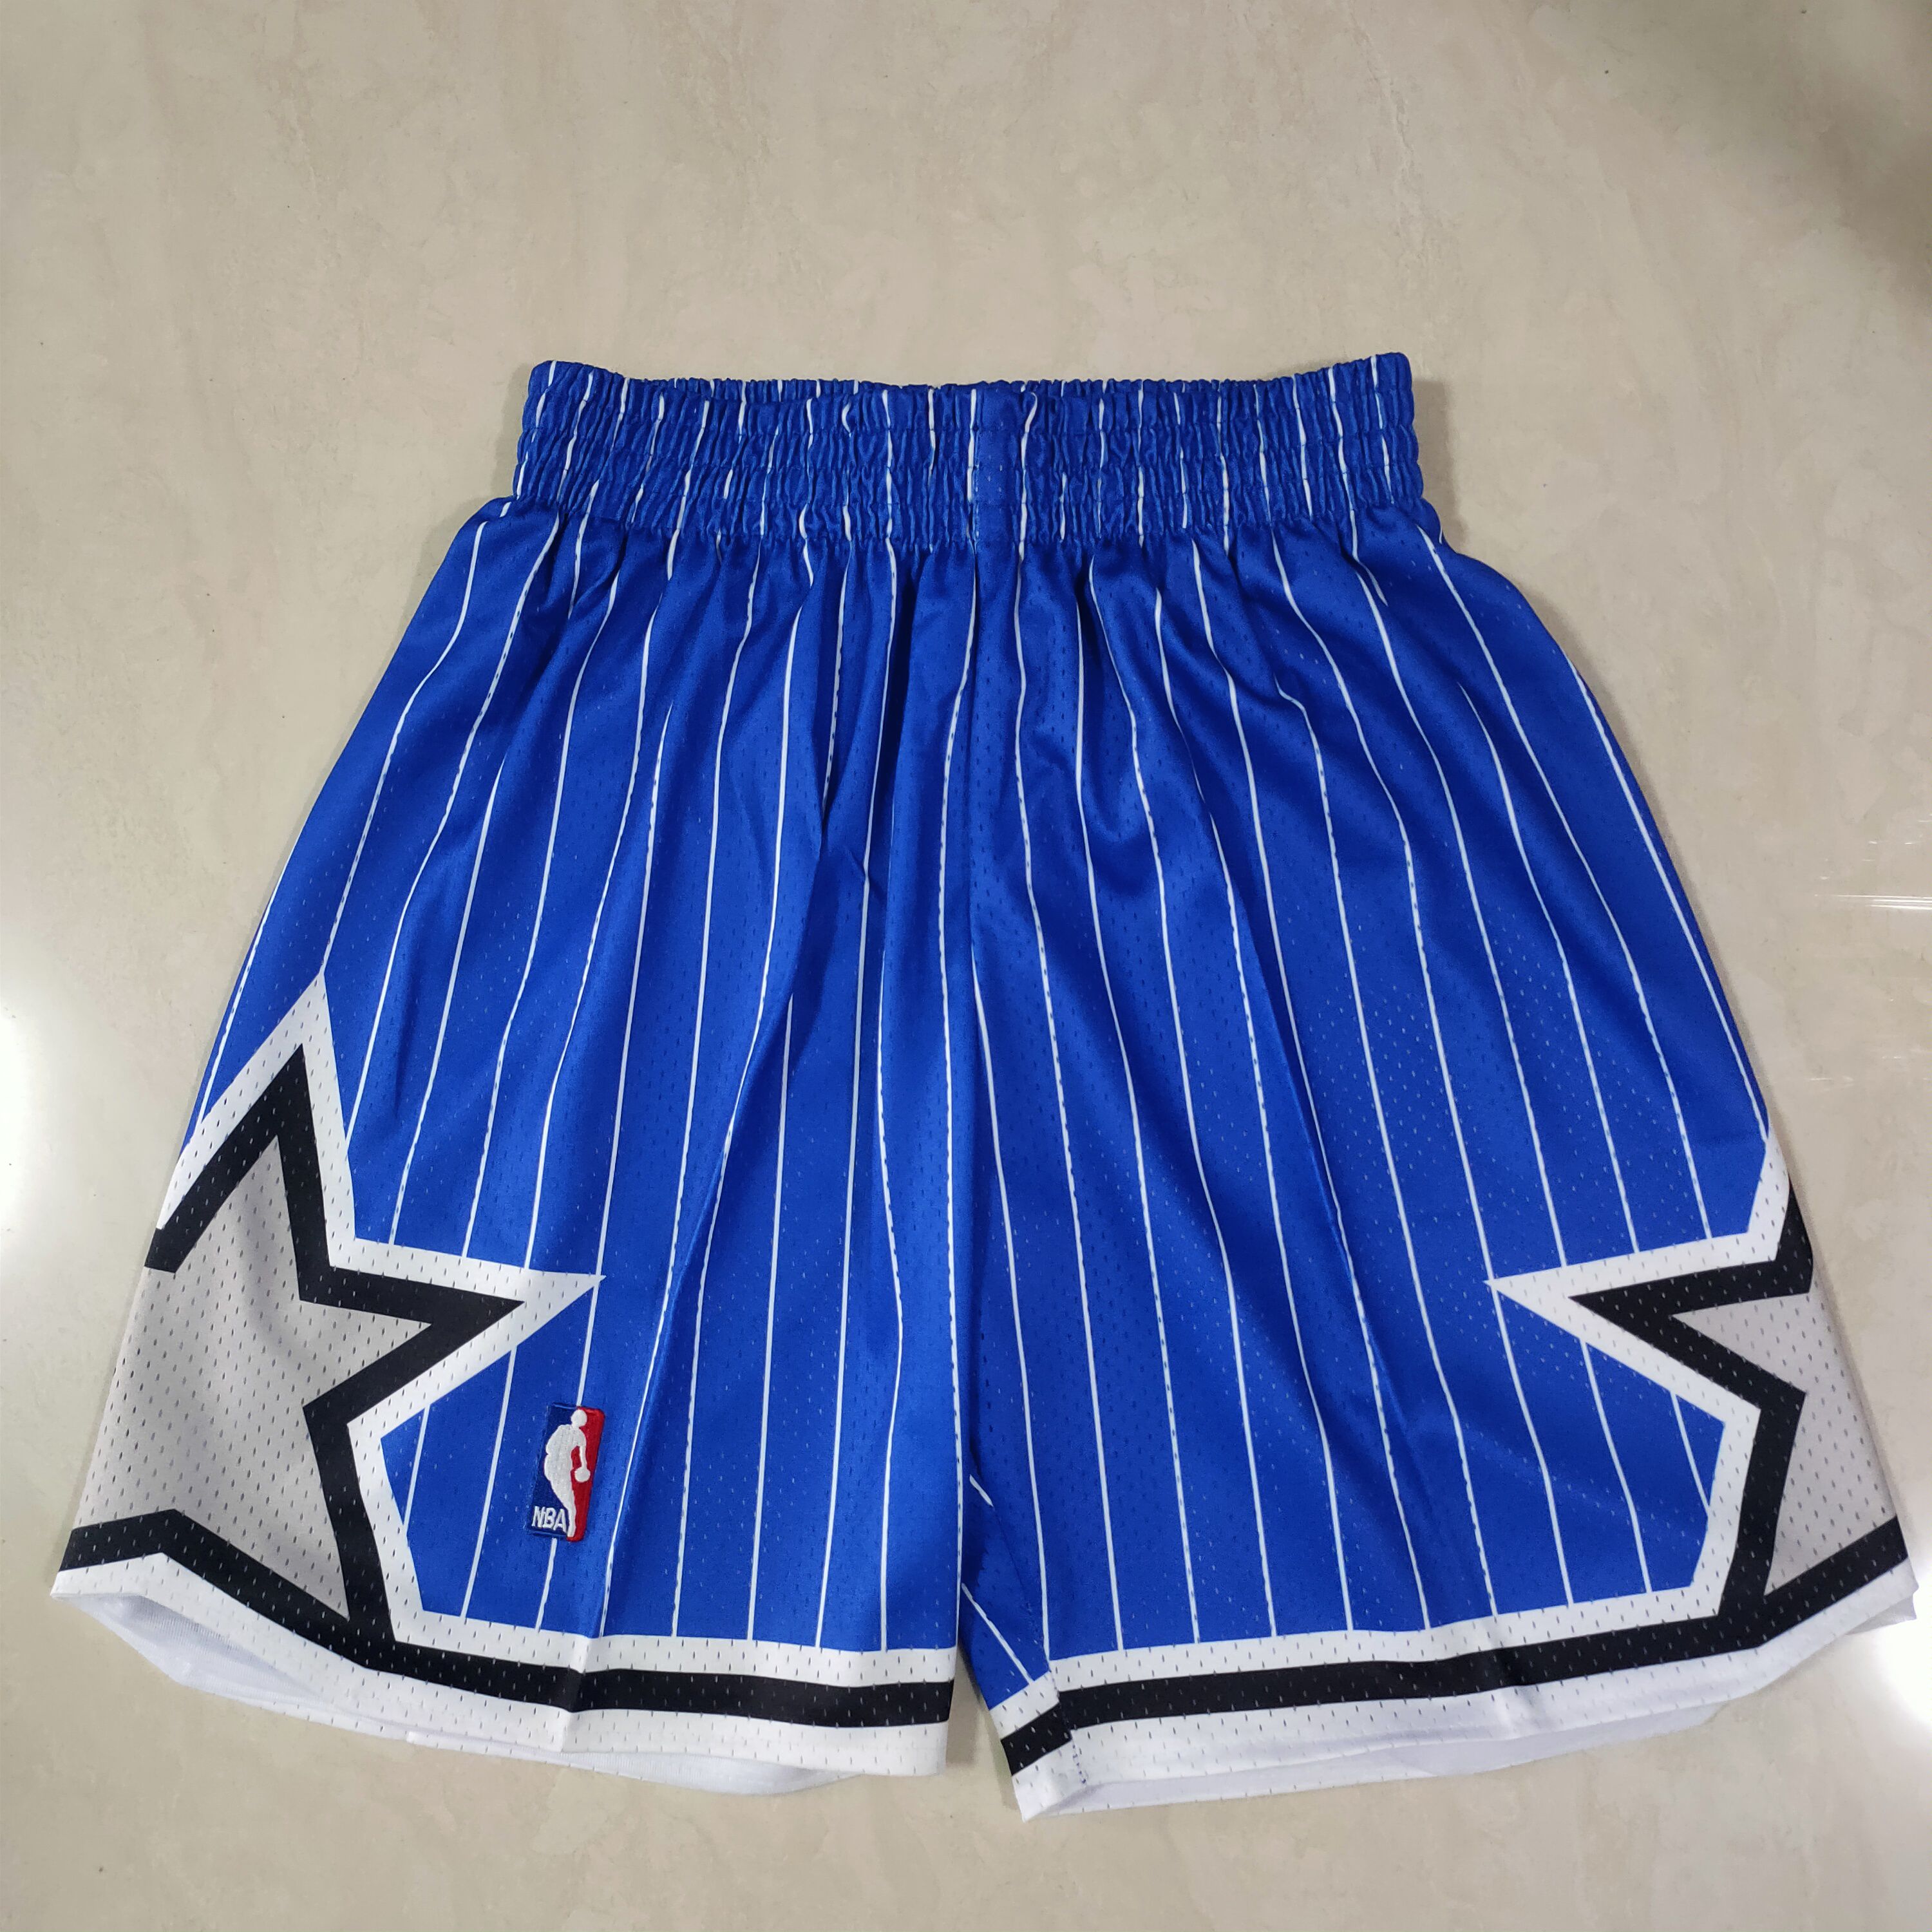 Men NBA Orlando Magic Blue Shorts 04161->orlando magic->NBA Jersey